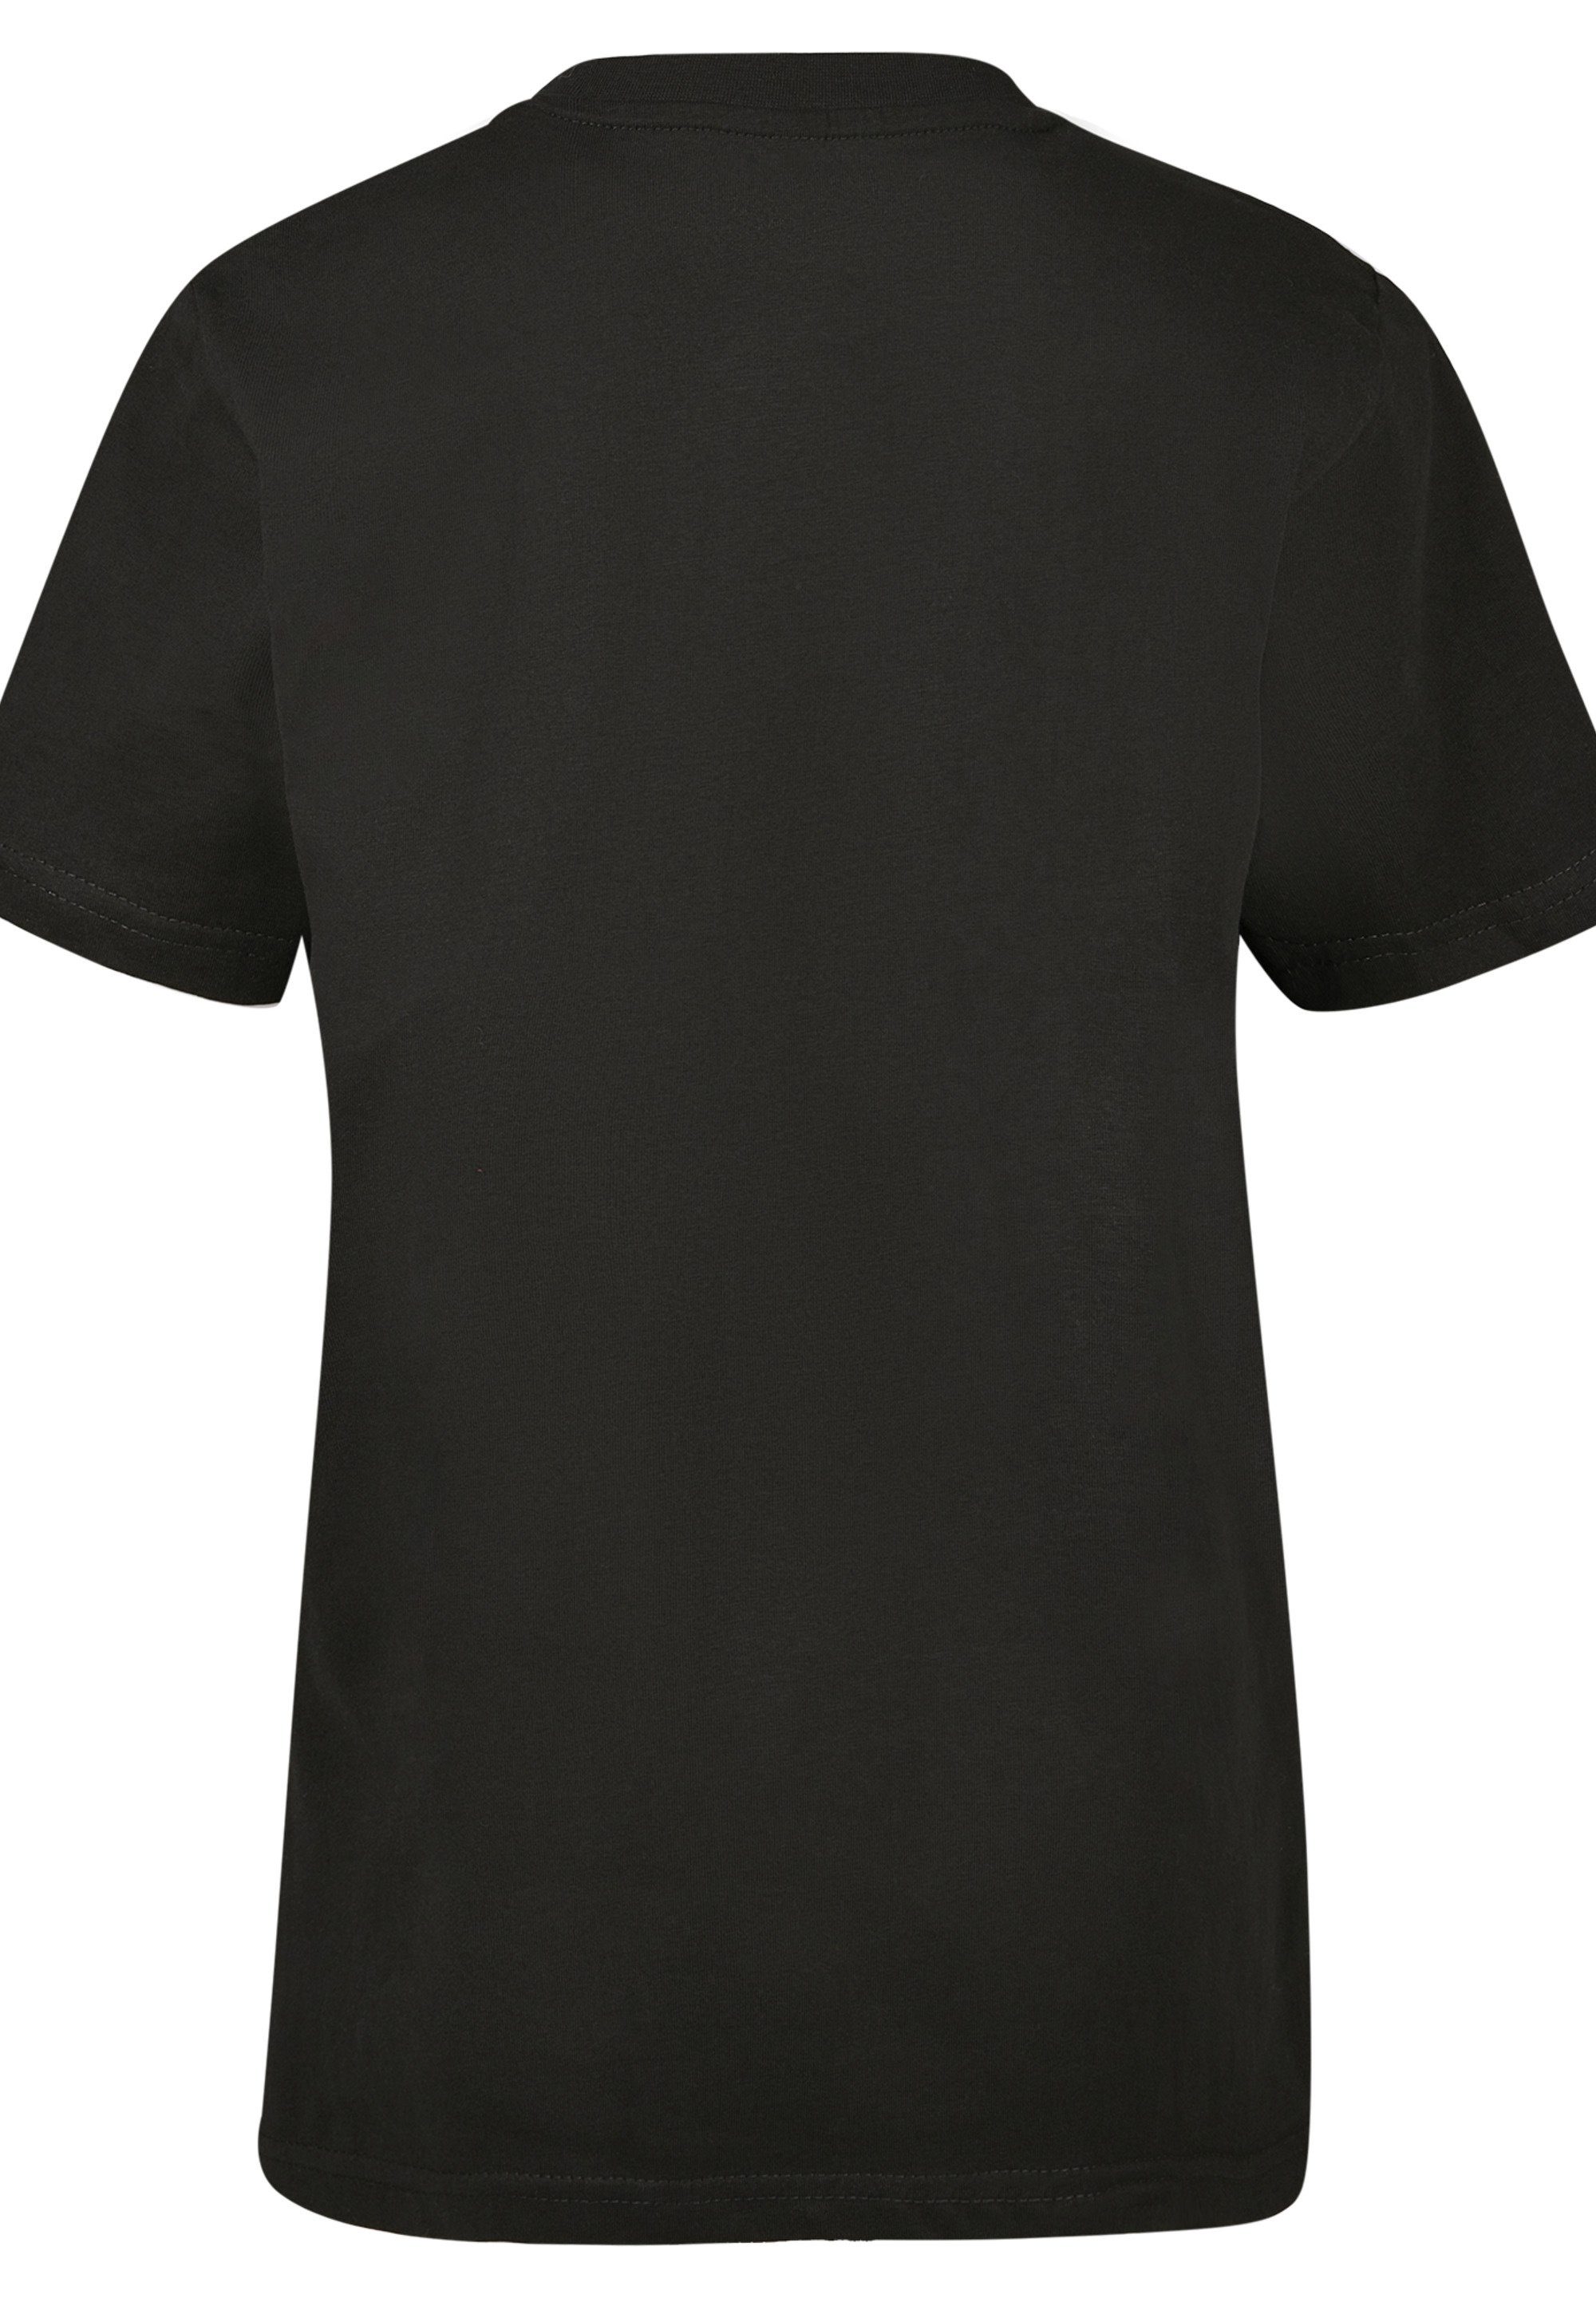 Kinder,Premium Fair Unisex NASA T-Shirt F4NT4STIC Merch,Jungen,Mädchen,Bedruckt Isle